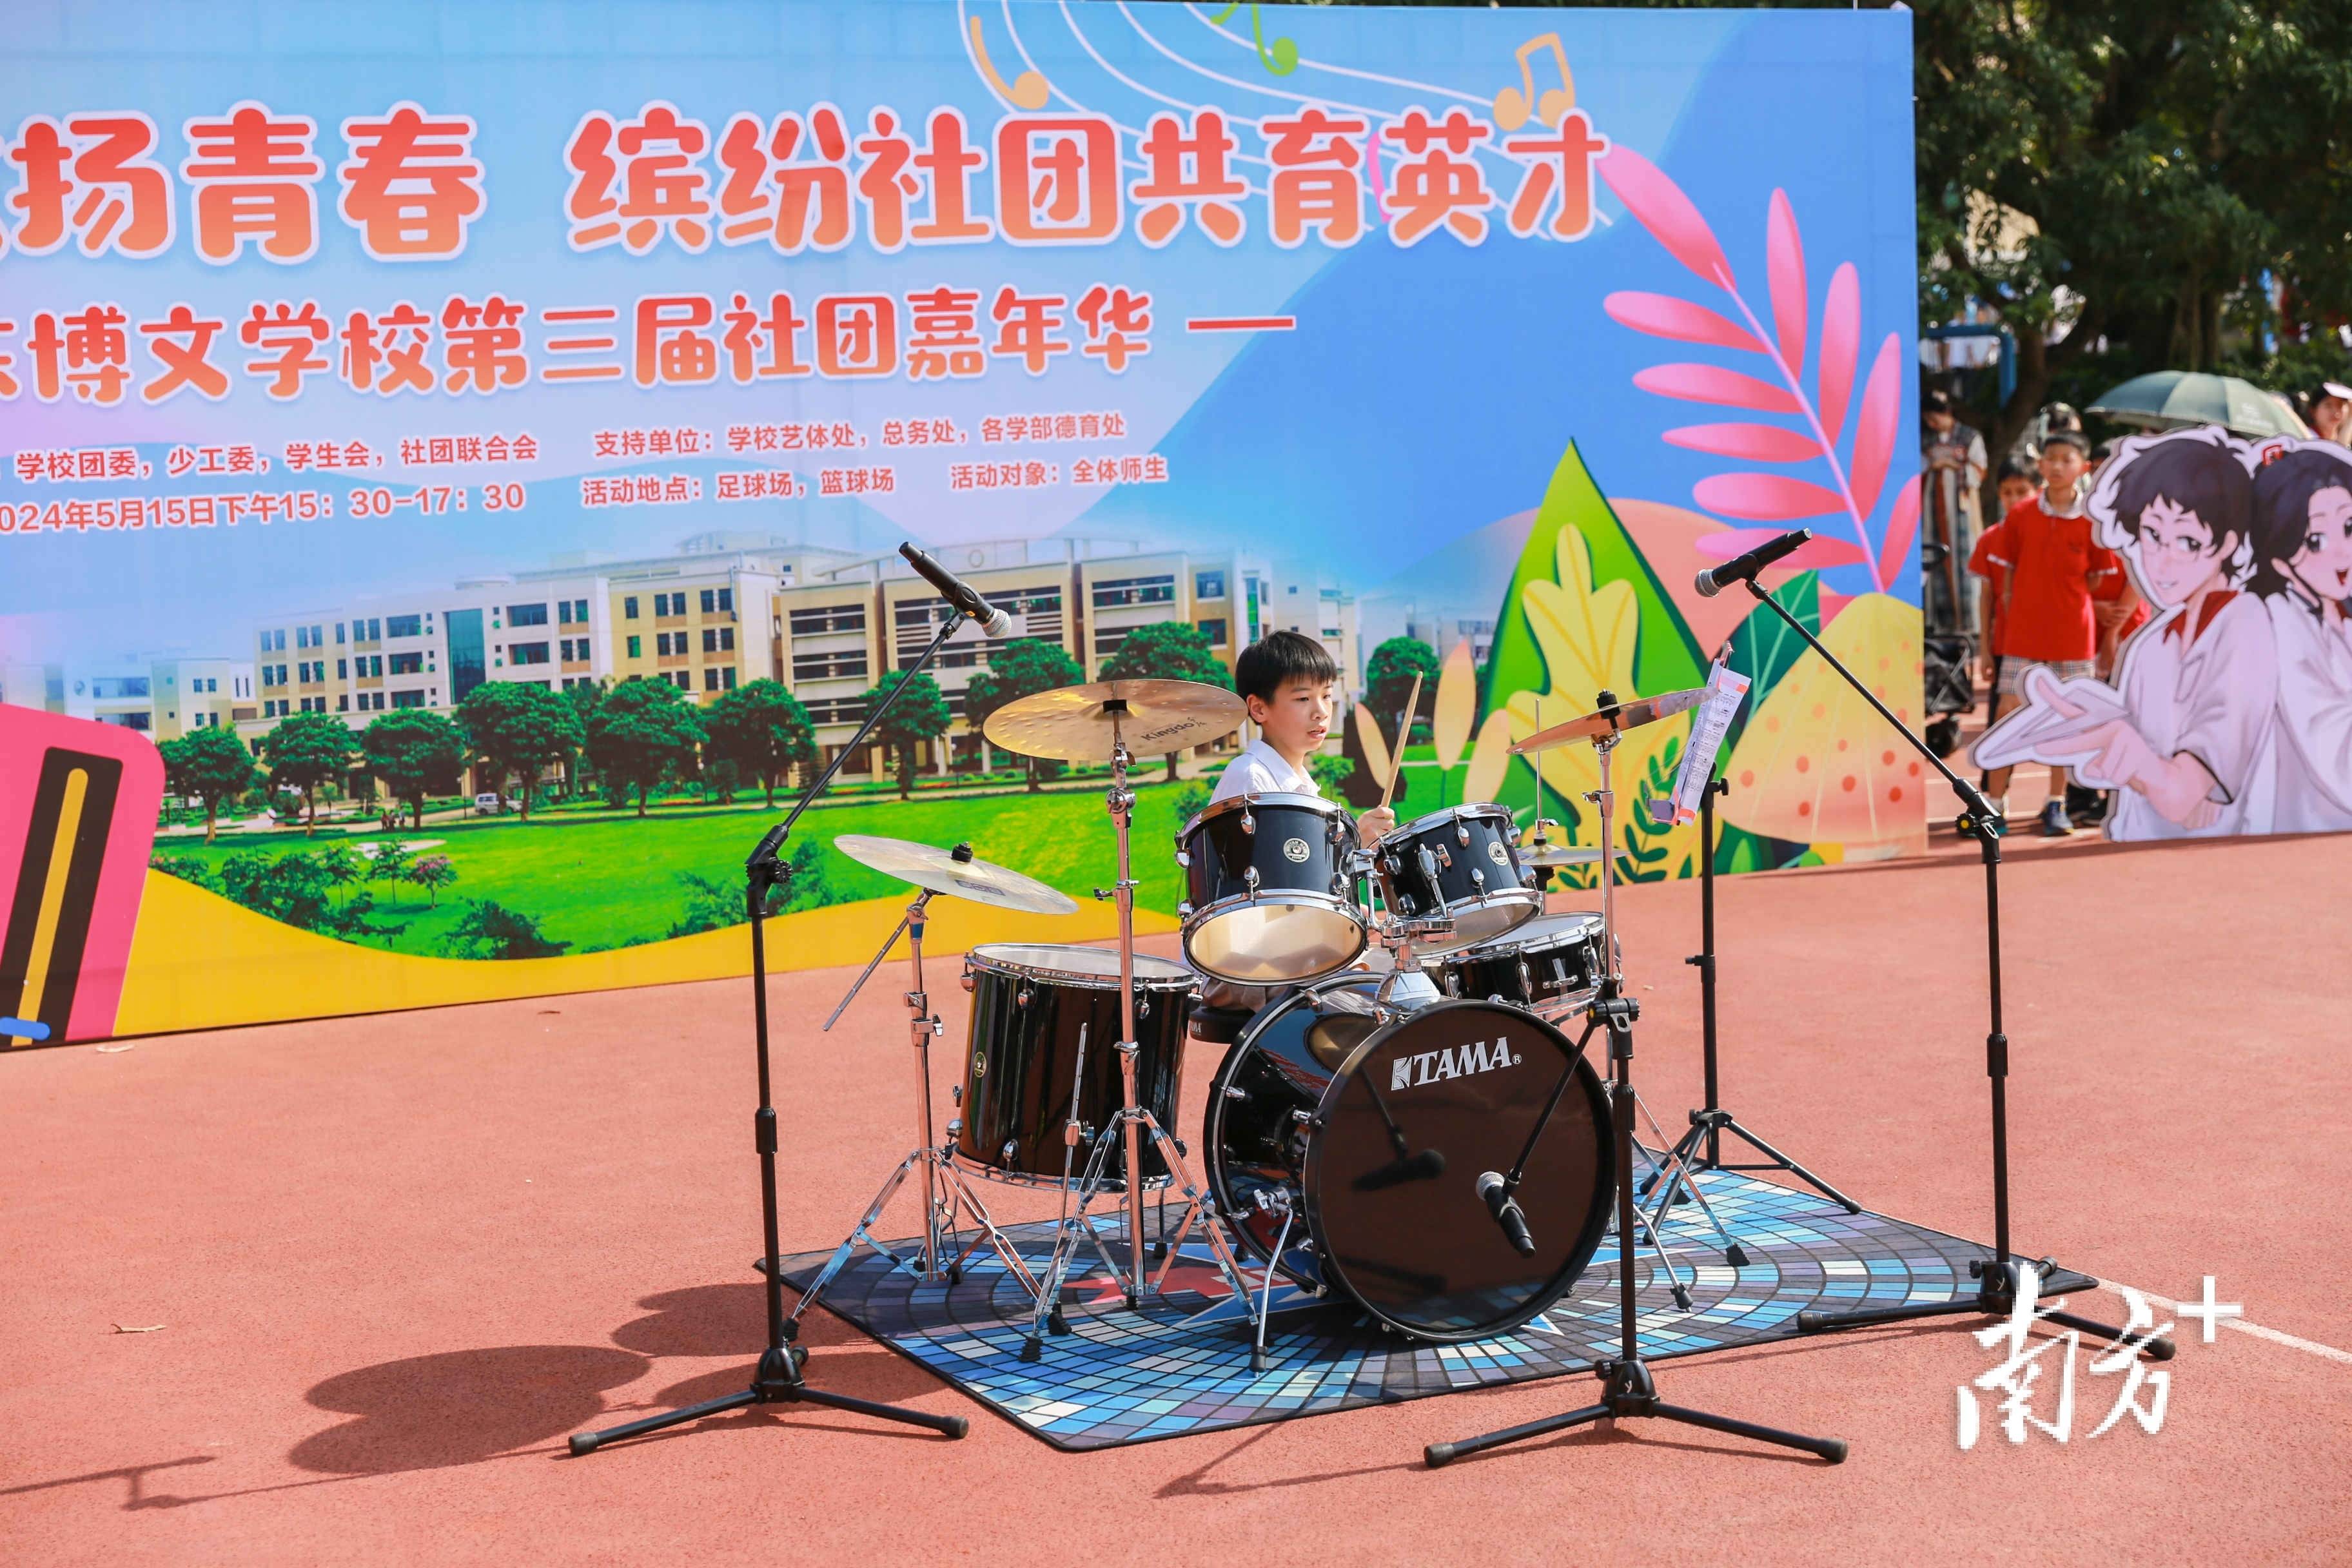 广东博文学校举办第三届社团嘉年华活动